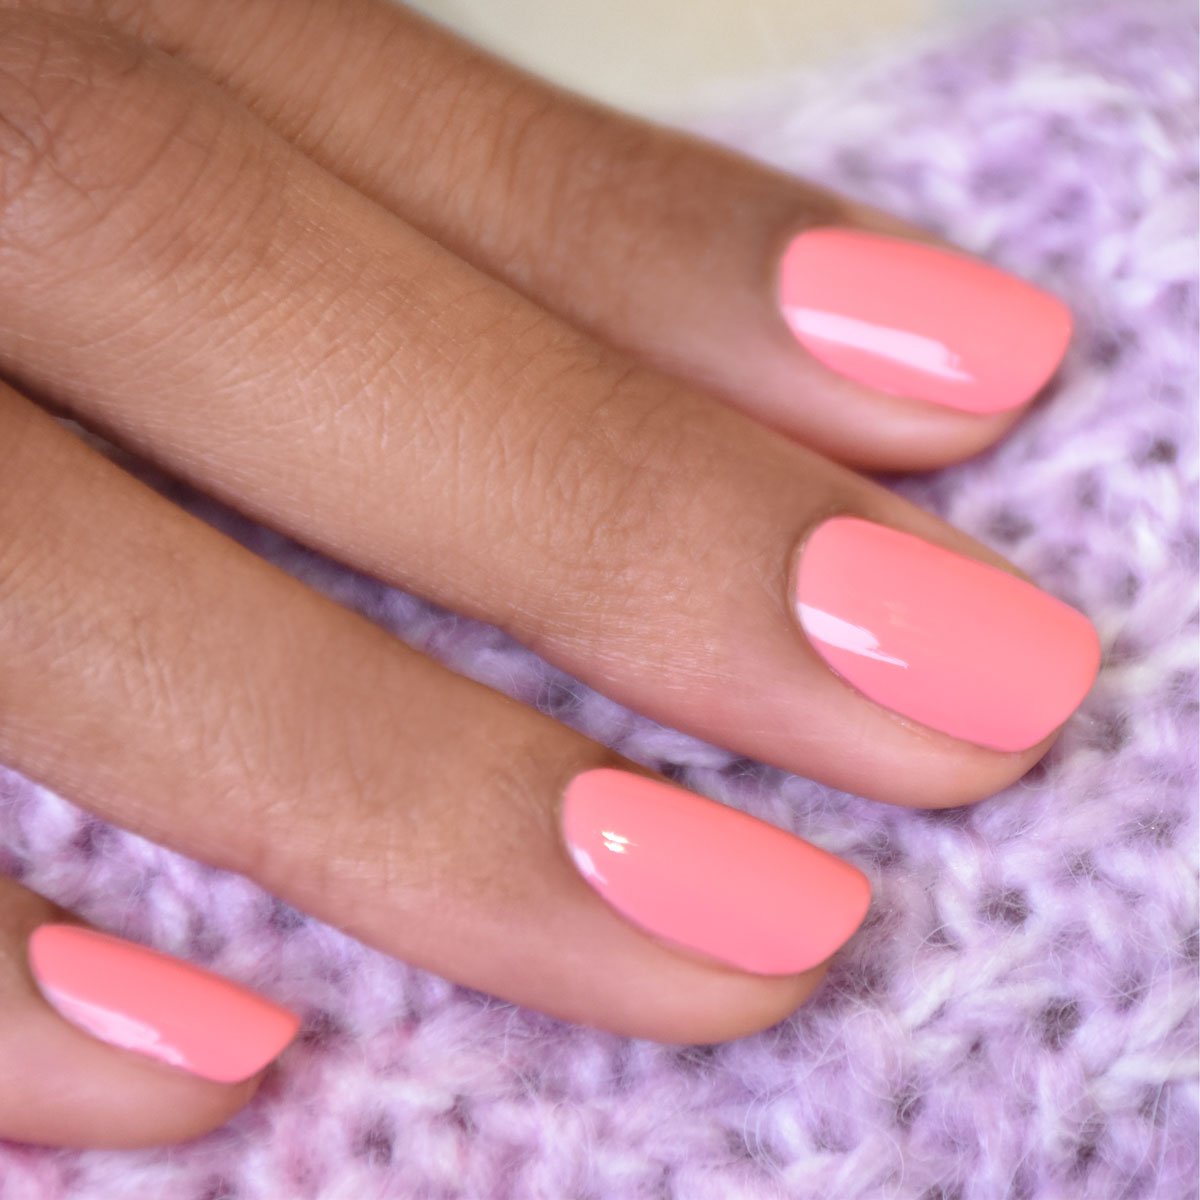 Sheer pink nail polish - Cirque Colors Chiffon | Gel nails, Simple wedding  nails, Nail colors